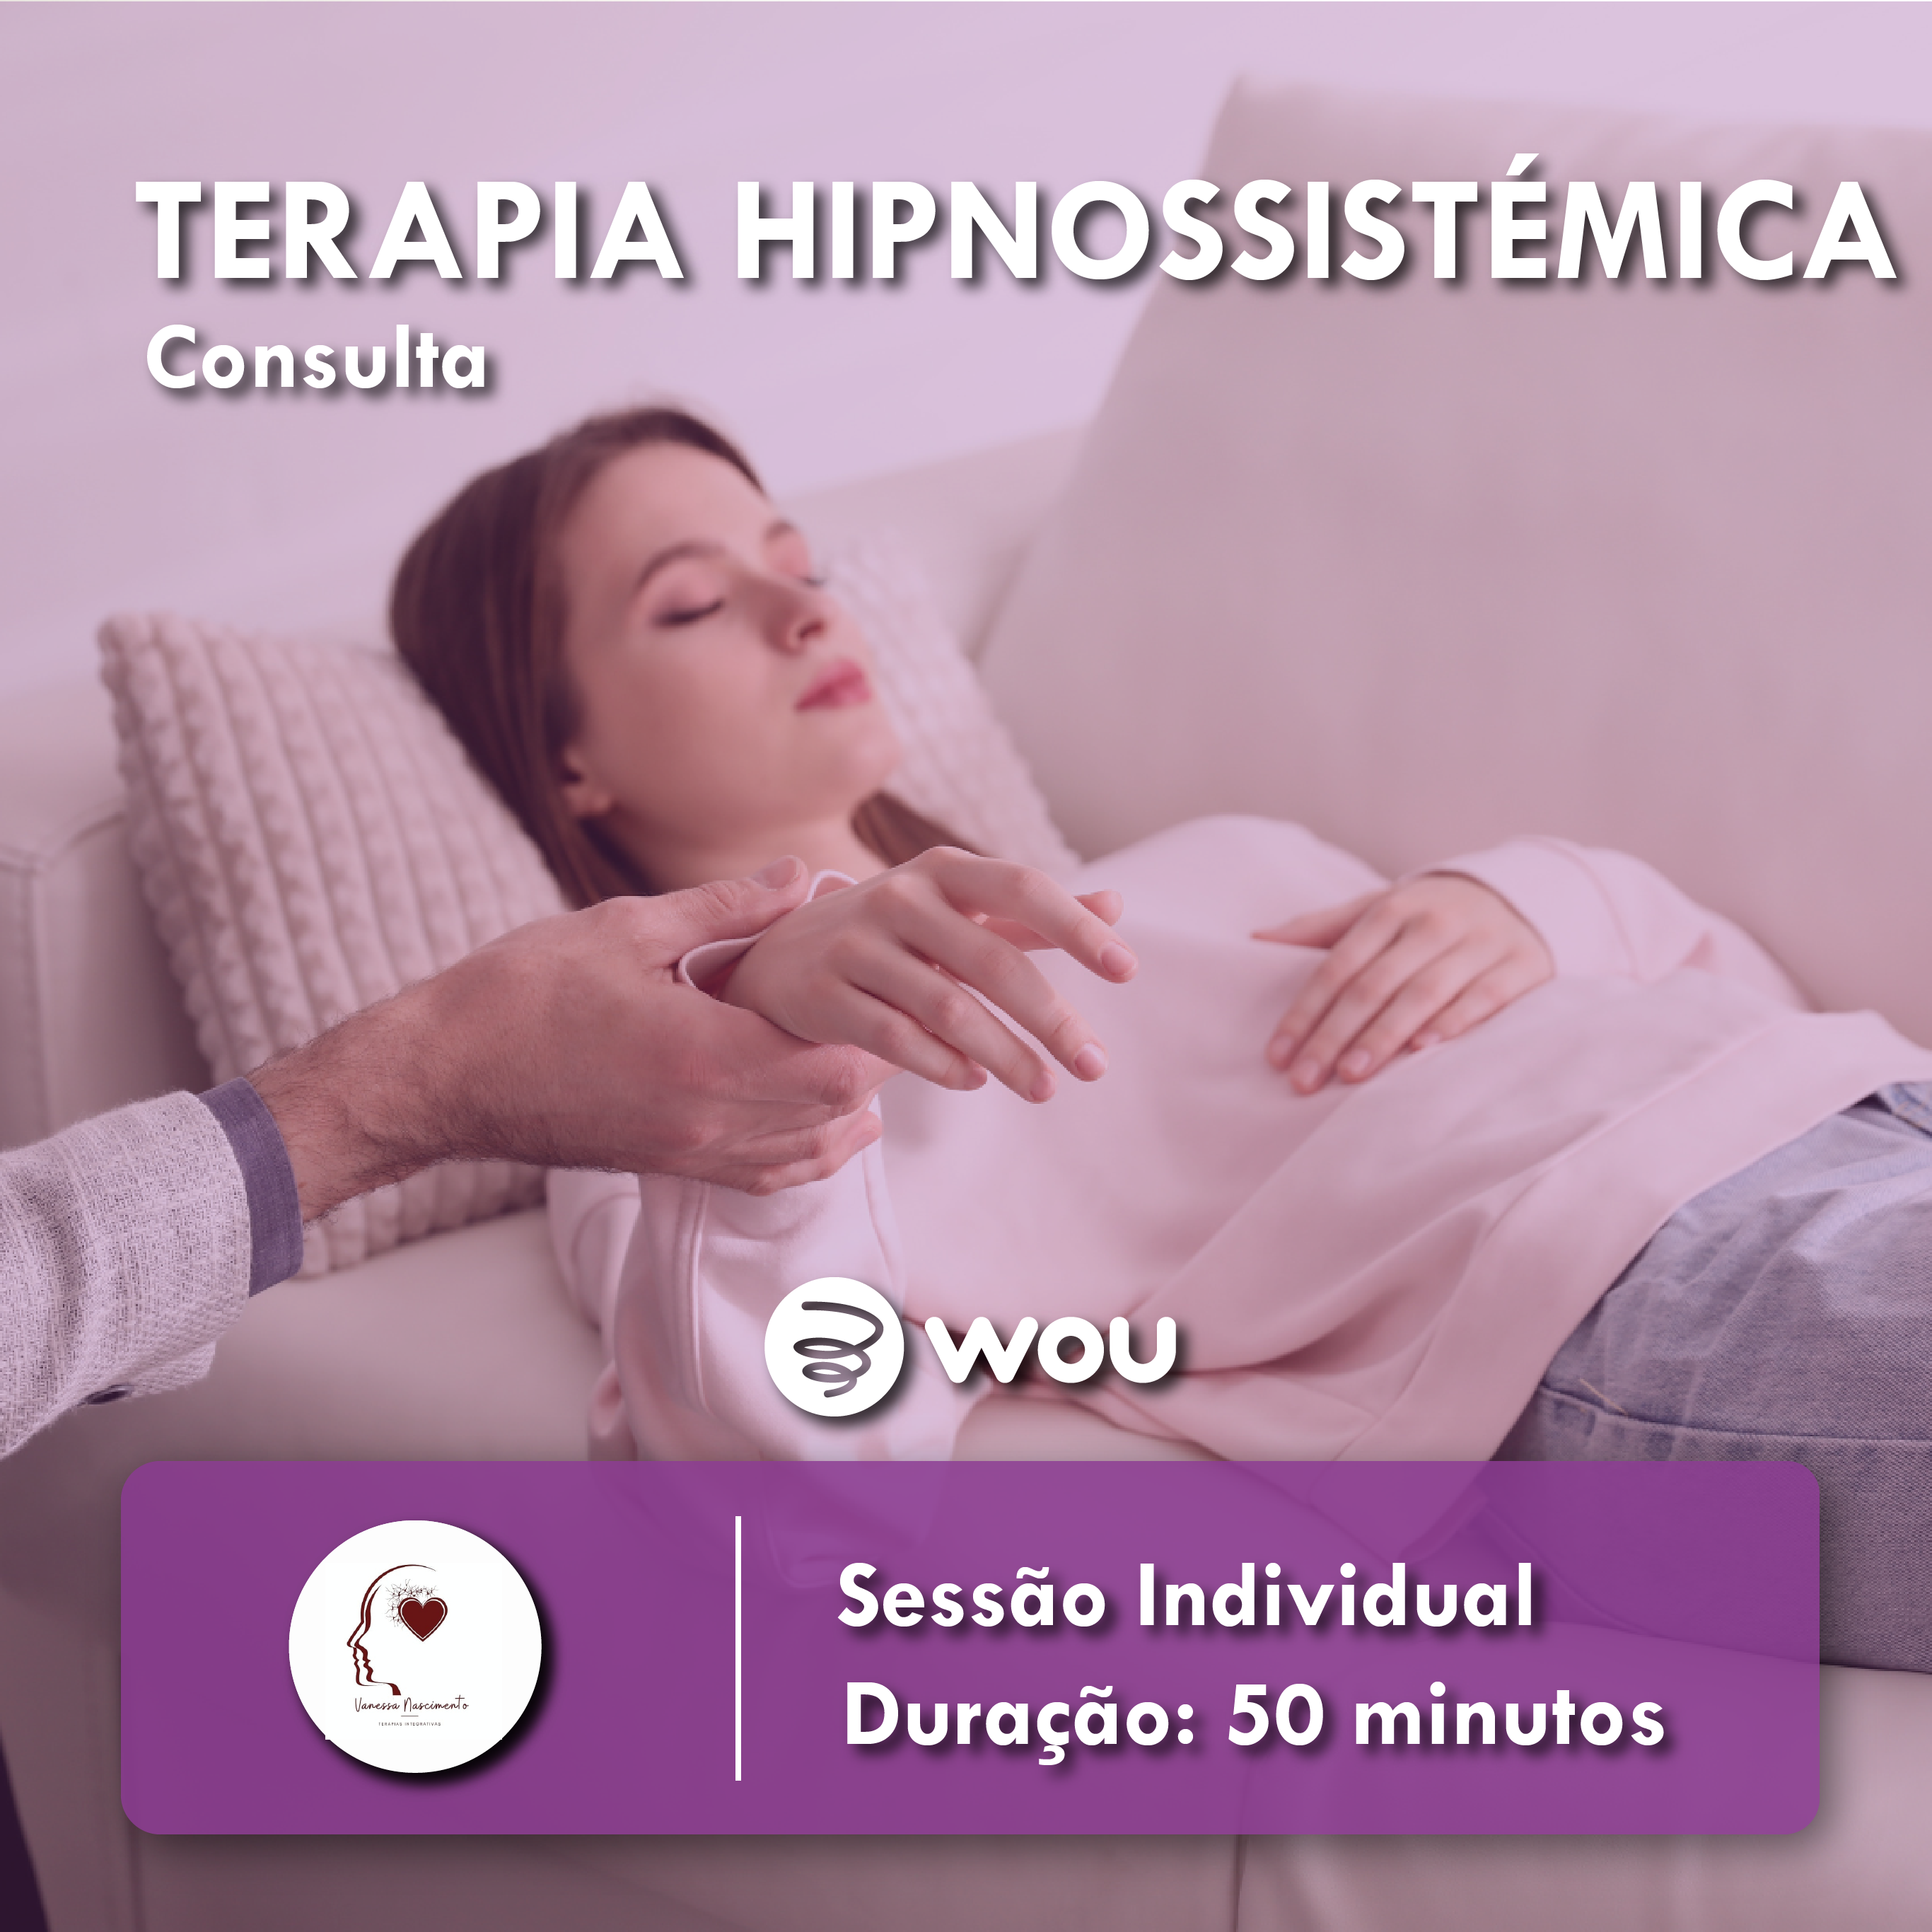 Consulta de Terapia Hipnossistémica em Aveiro